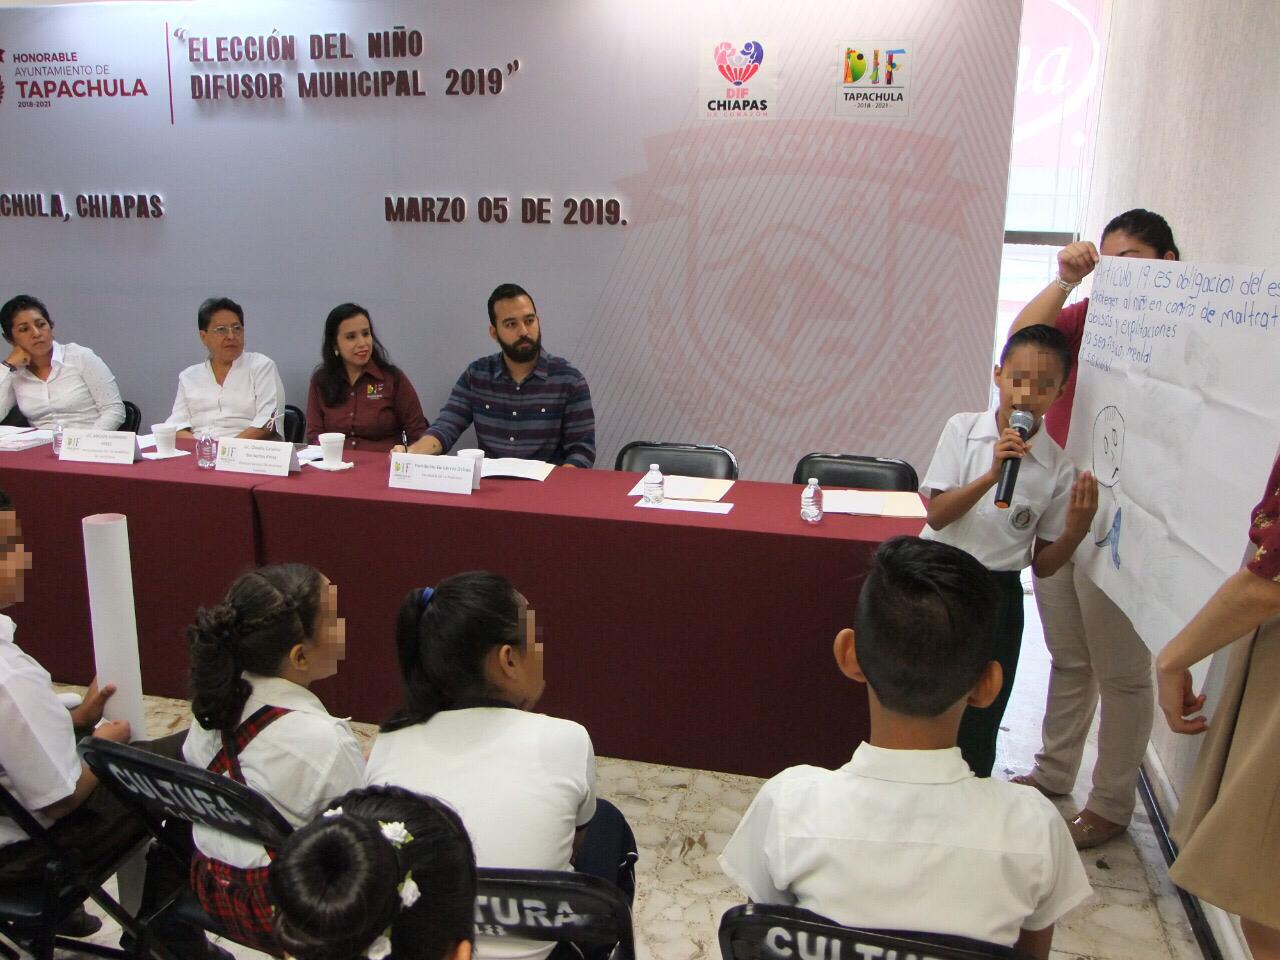 Para promover los derechos de la niñez… REALIZAN CON ÉXITO ELECCIÓN DEL NIÑO DIFUSOR MUNICIPAL 2019